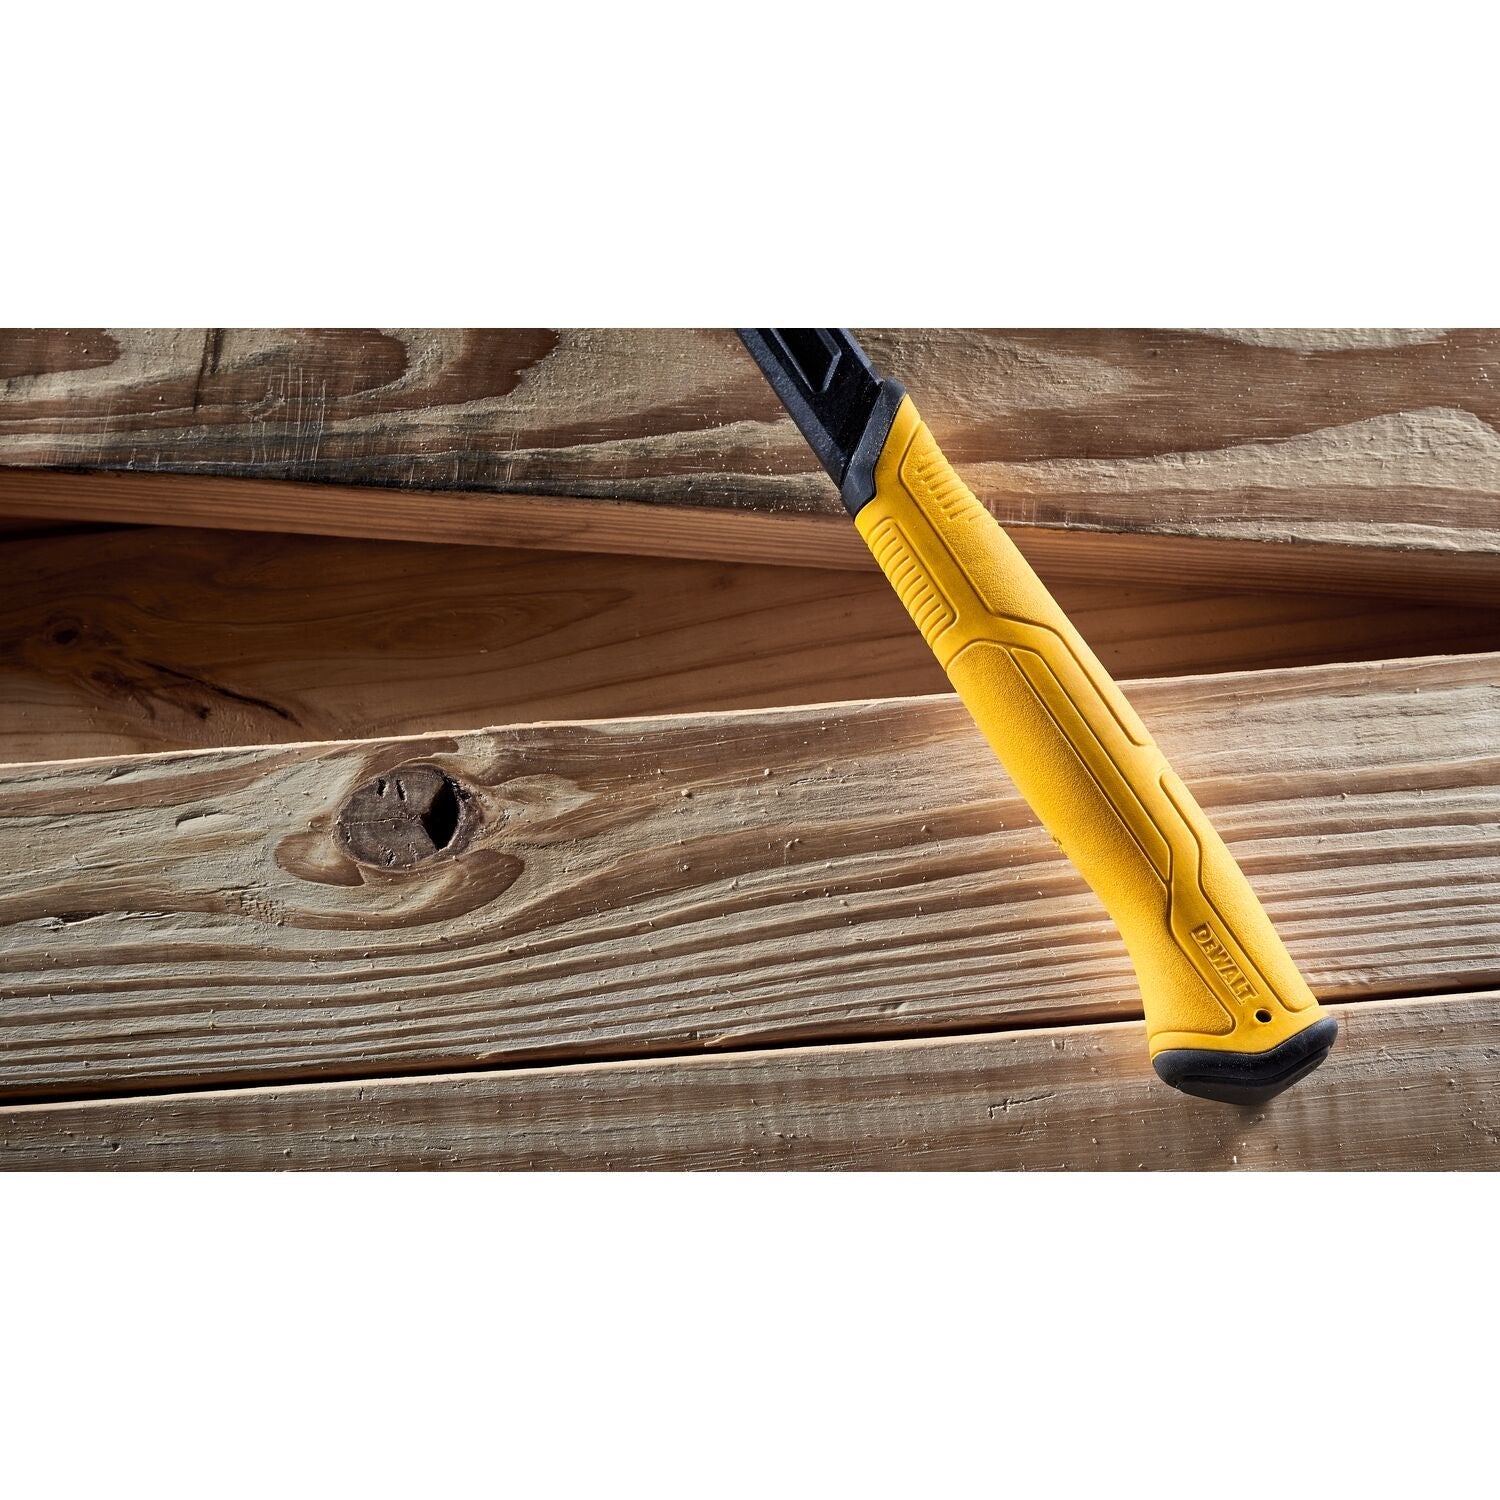 Dewalt DWHT51003 16 oz Rip Claw Steel Hammer